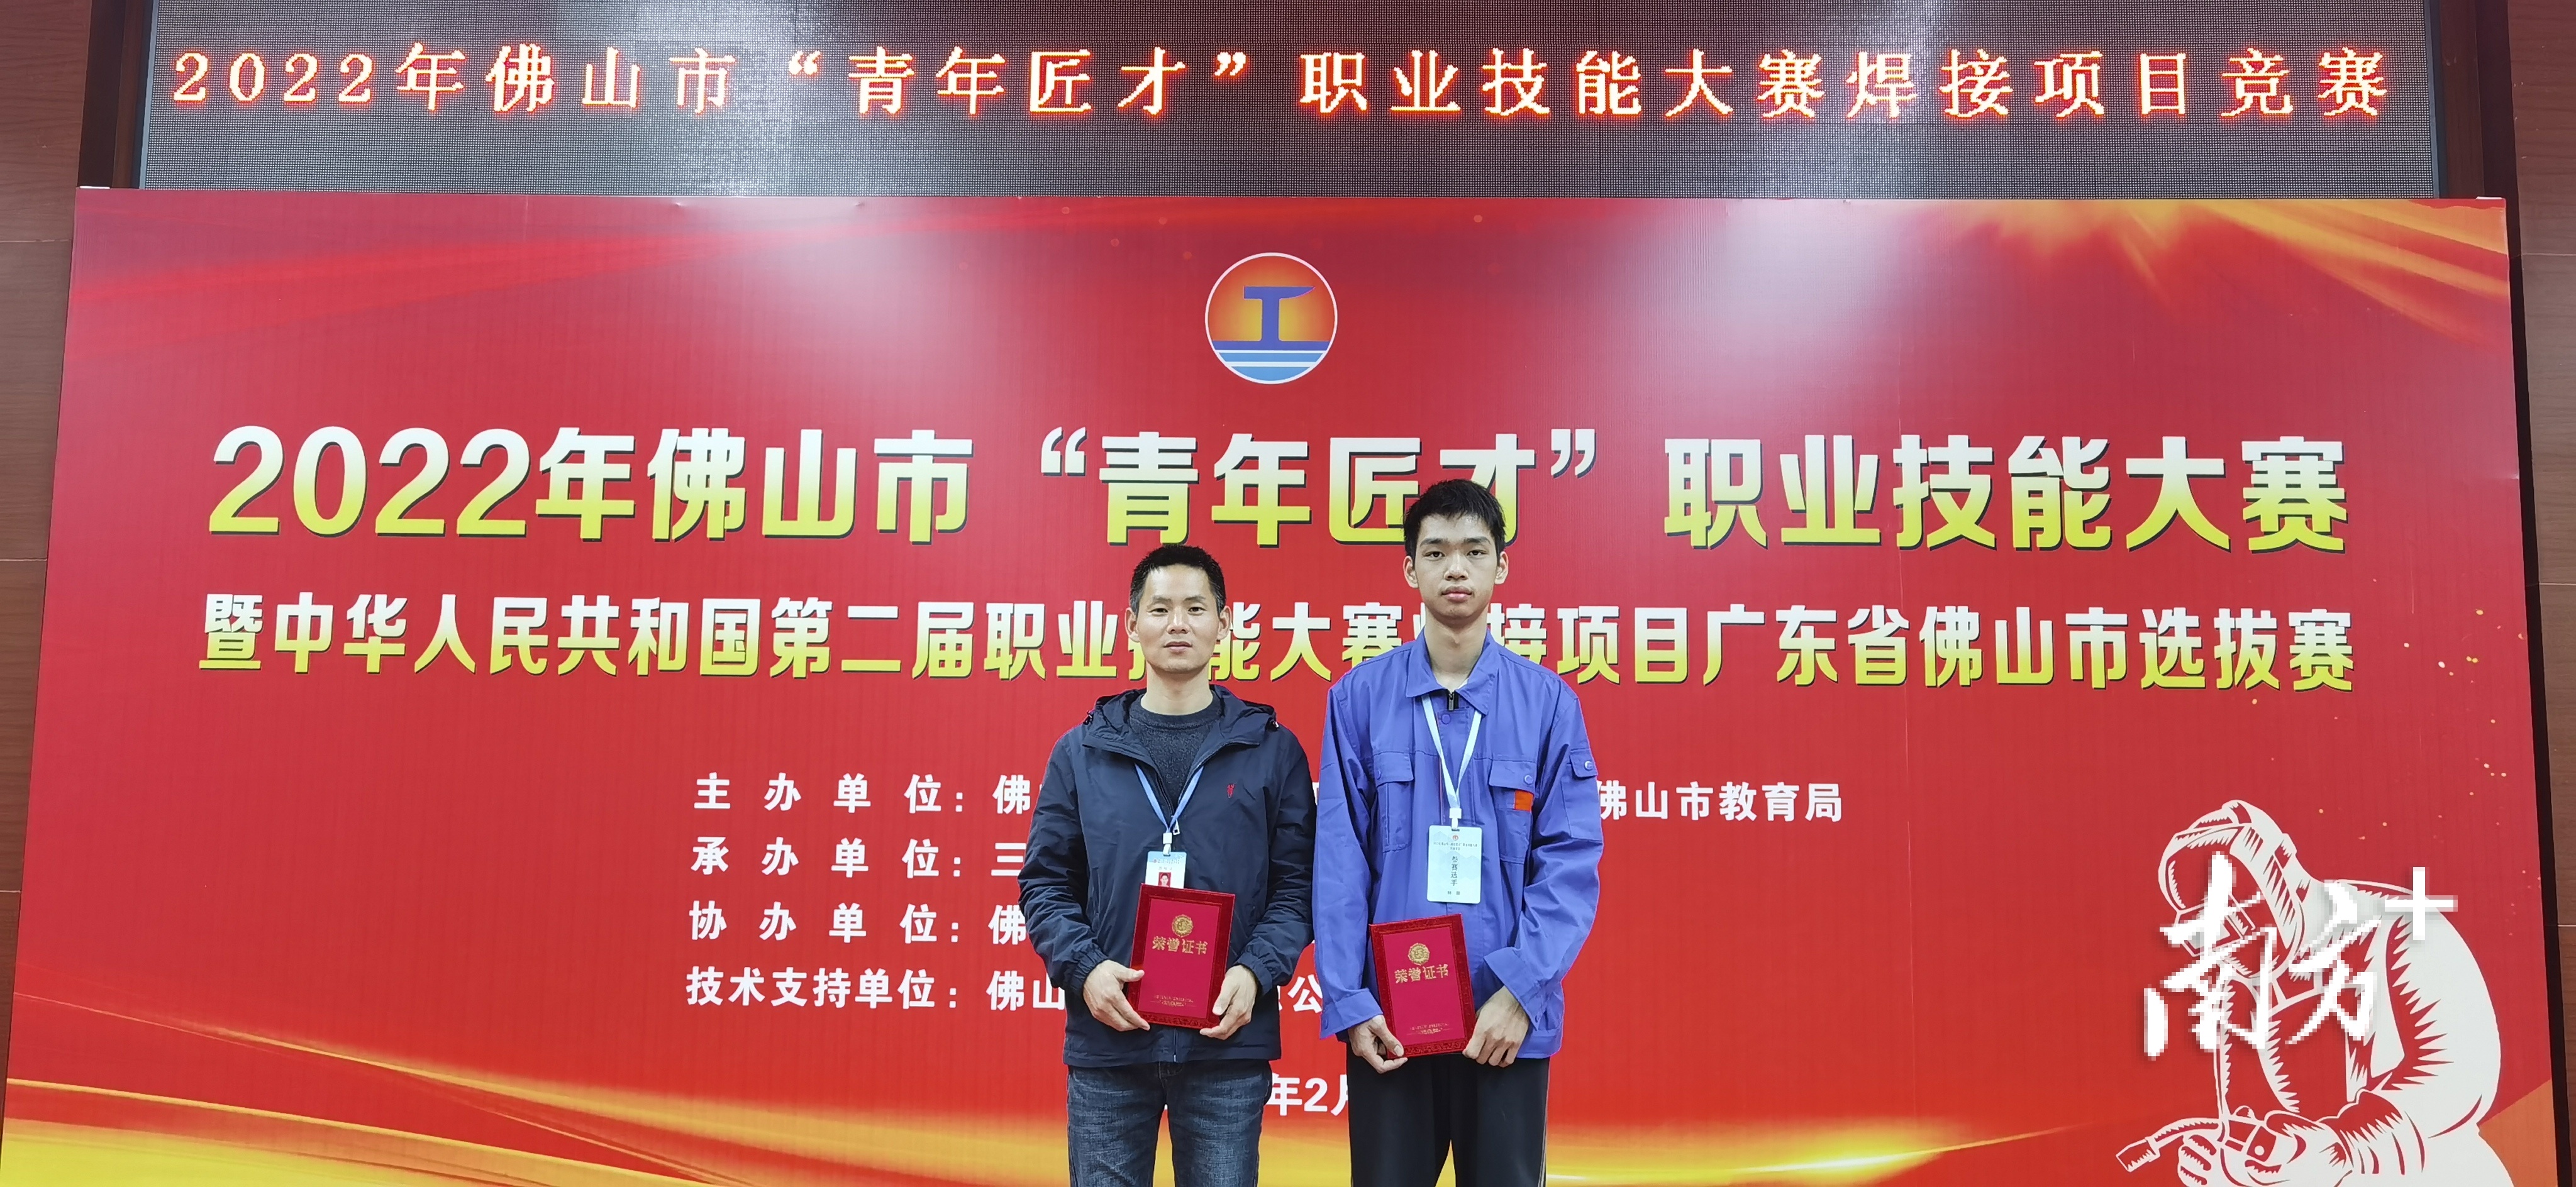 三水区理工学校学子林颐获得大赛一等奖第一名，将代表佛山市参加中华人民共和国第二届职业技能大赛焊接项目广东省选拔赛。